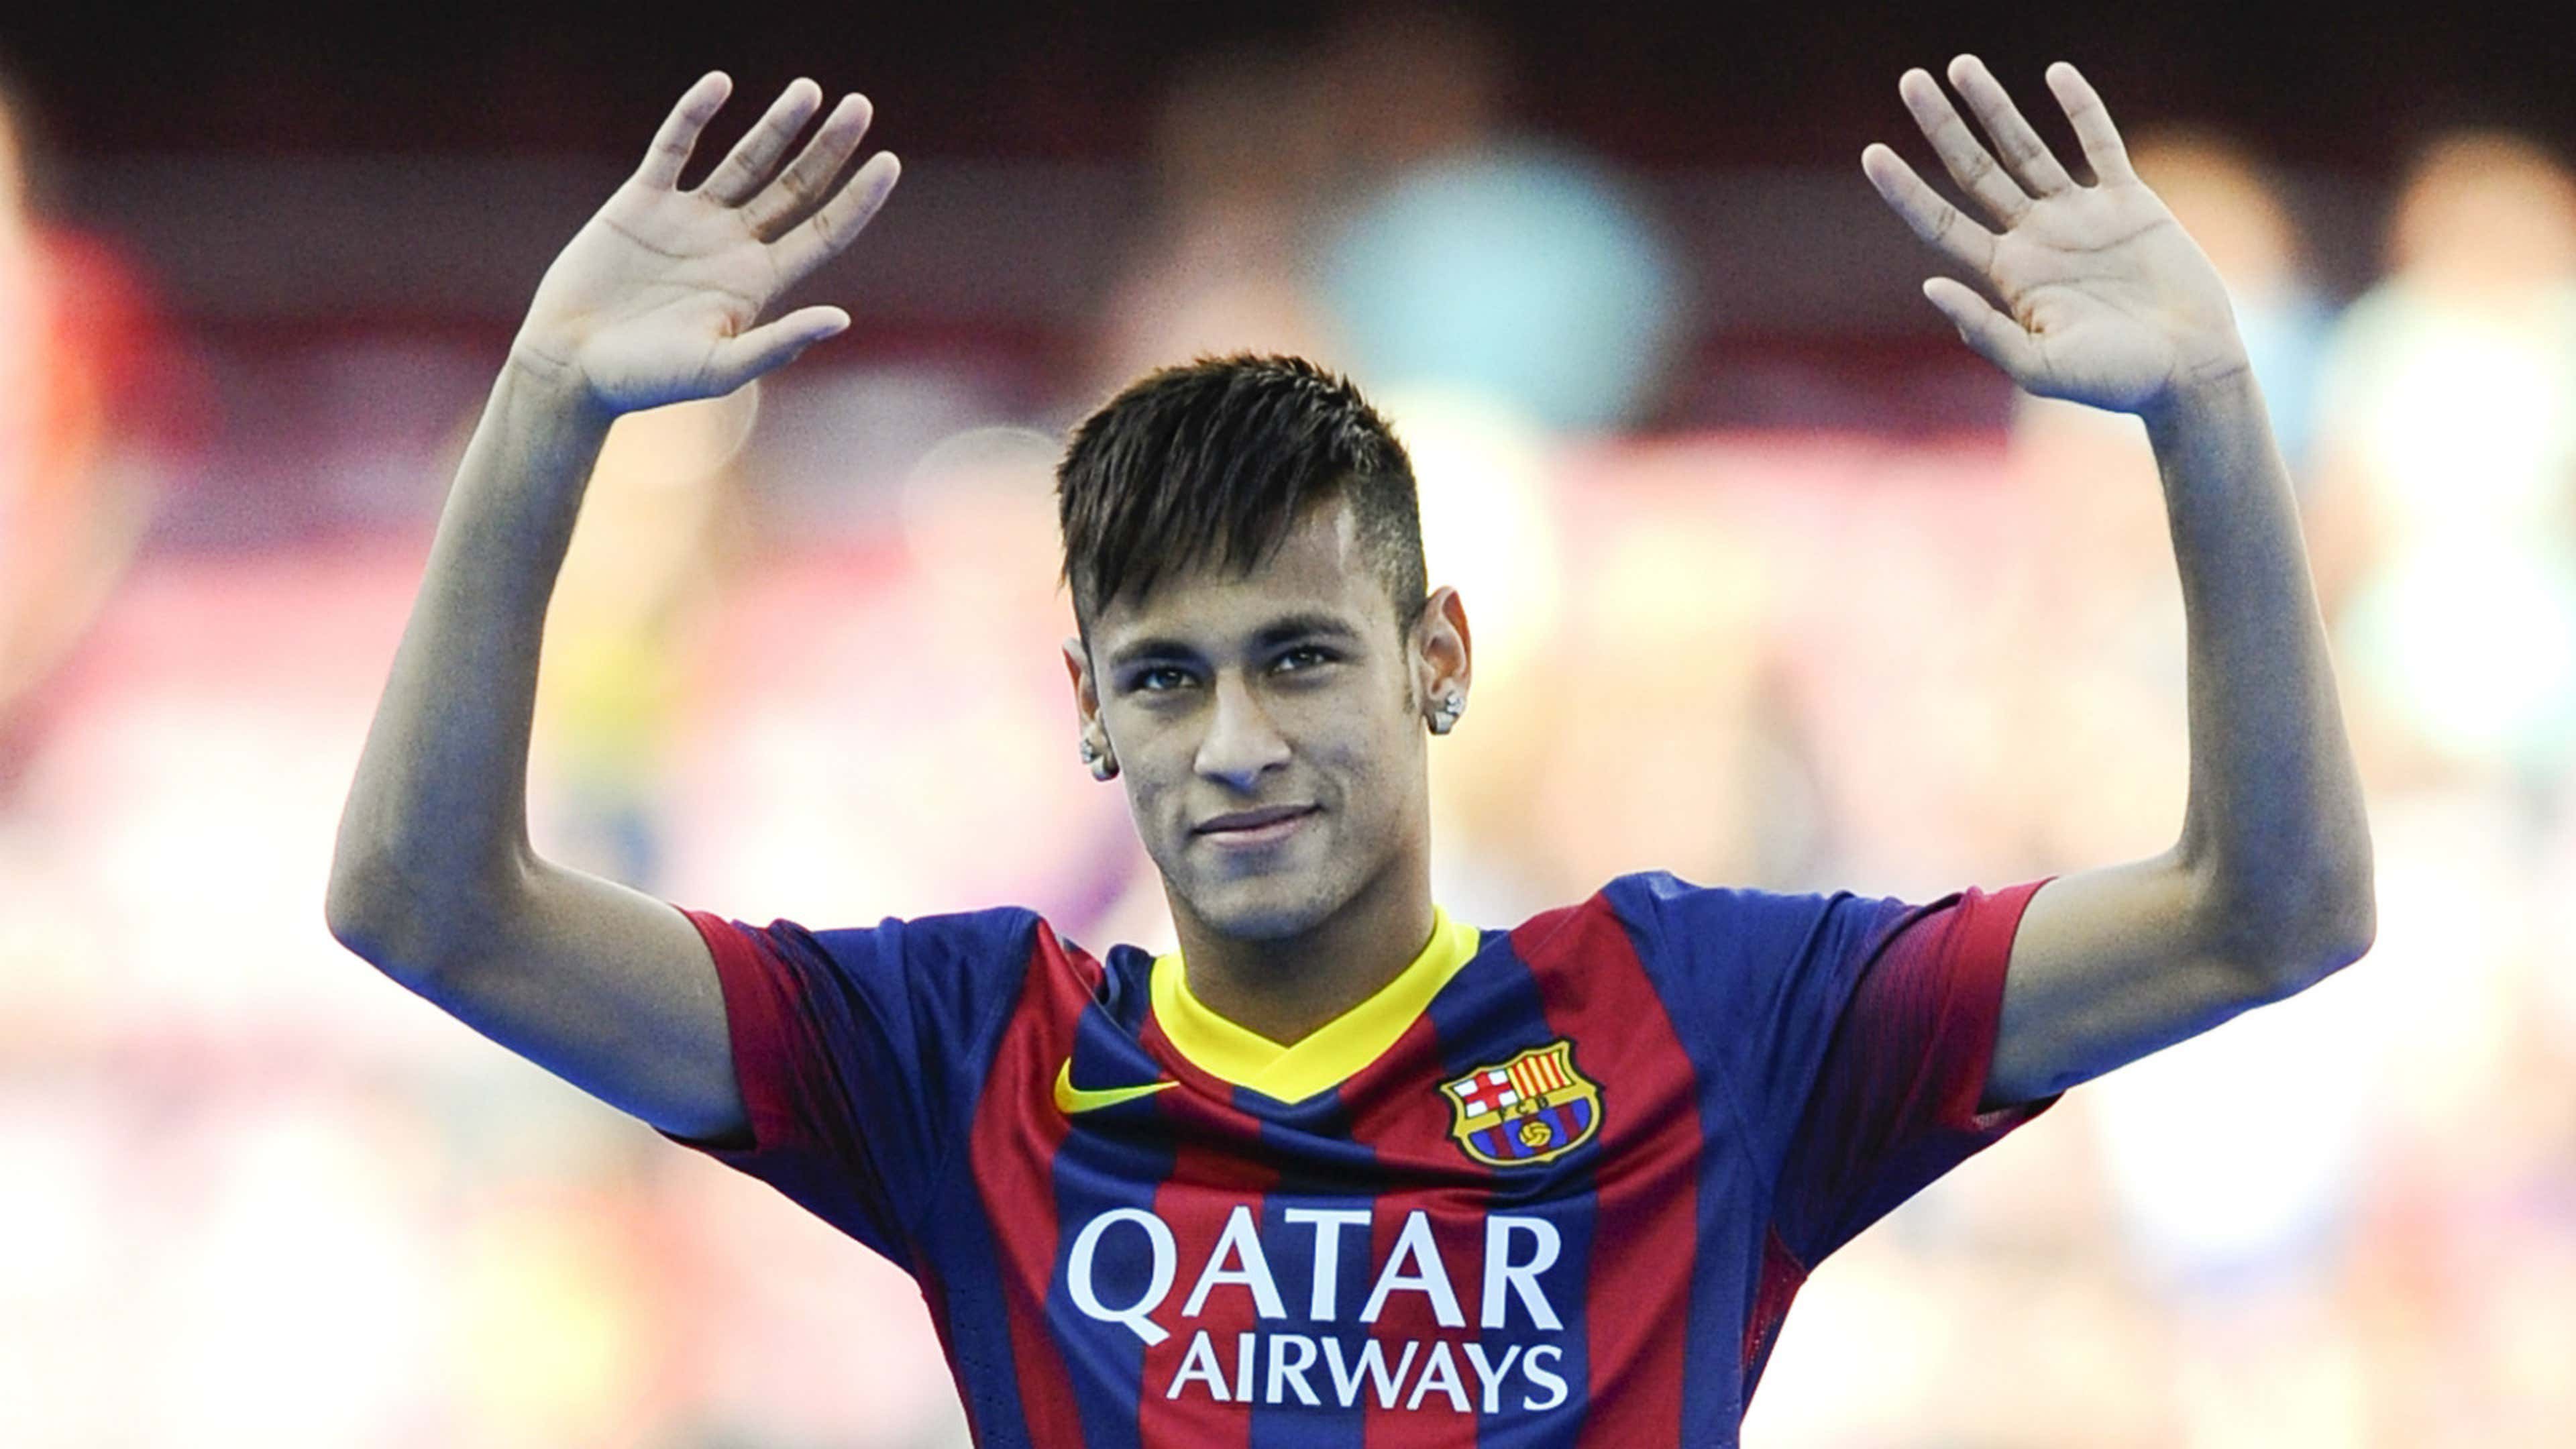 Từ chối Real, Neymar chạy theo tiếng gọi của con tim | Goal.com Việt Nam